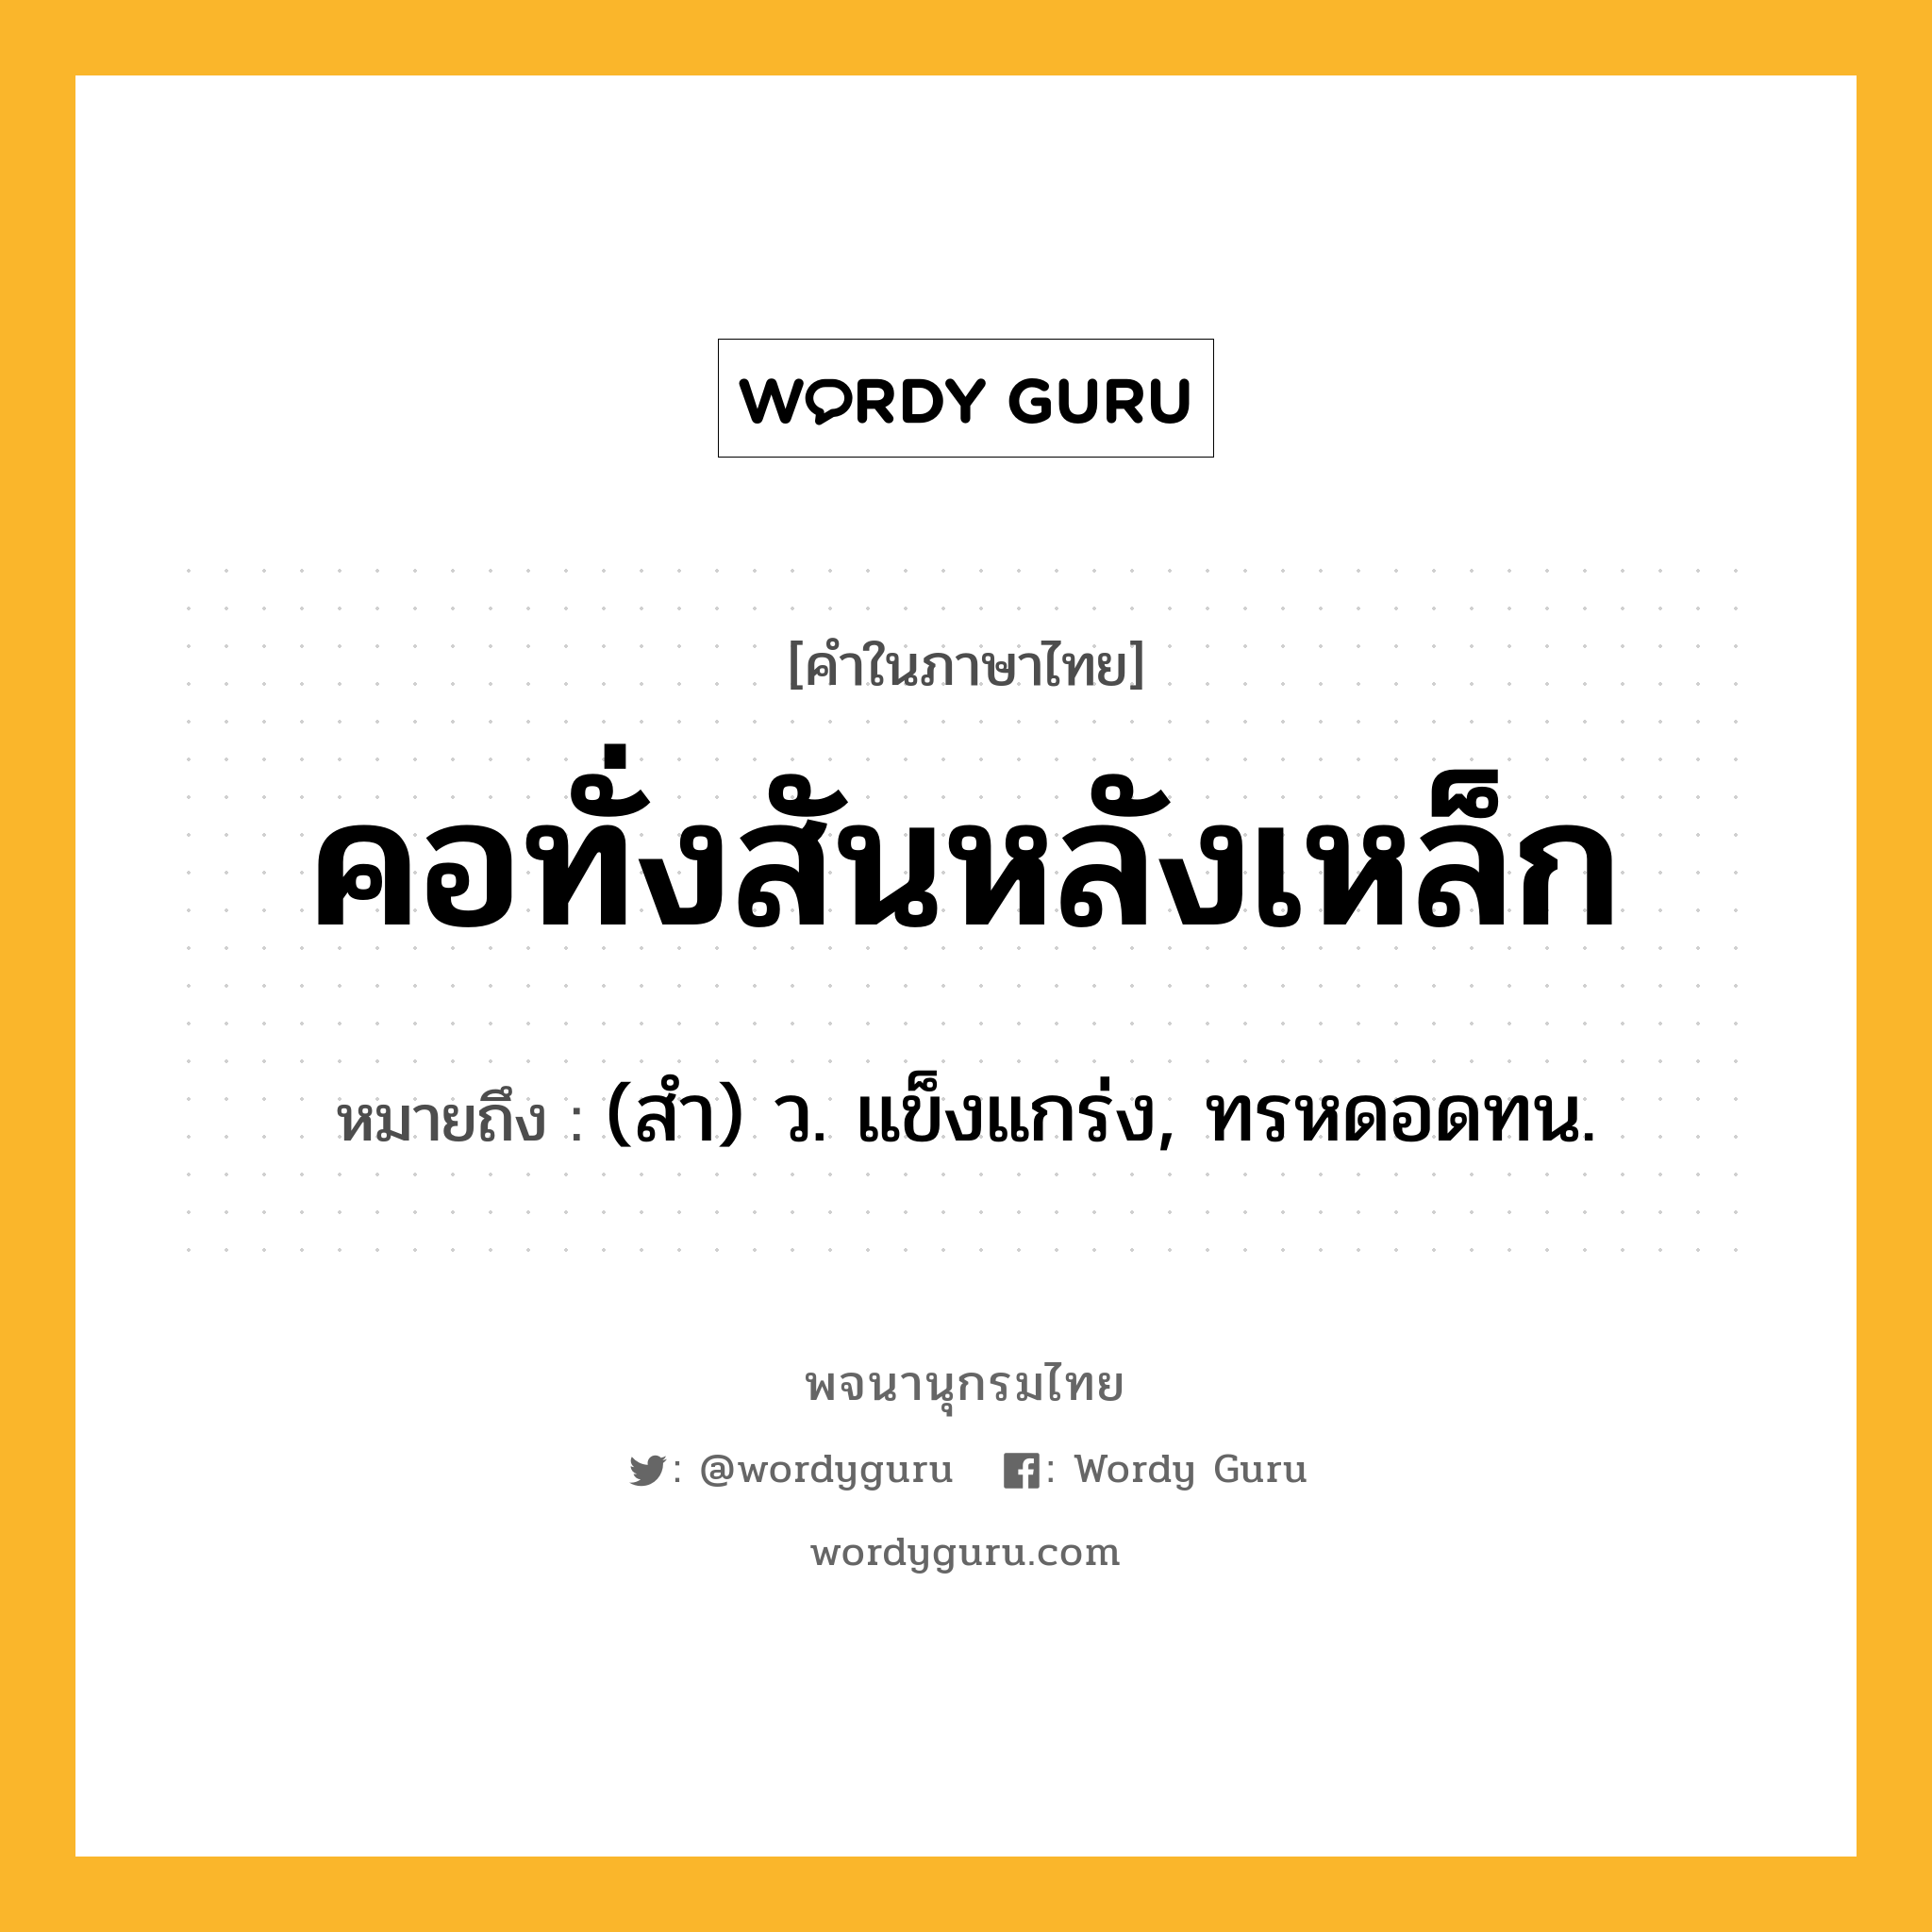 คอทั่งสันหลังเหล็ก ความหมาย หมายถึงอะไร?, คำในภาษาไทย คอทั่งสันหลังเหล็ก หมายถึง (สำ) ว. แข็งแกร่ง, ทรหดอดทน.